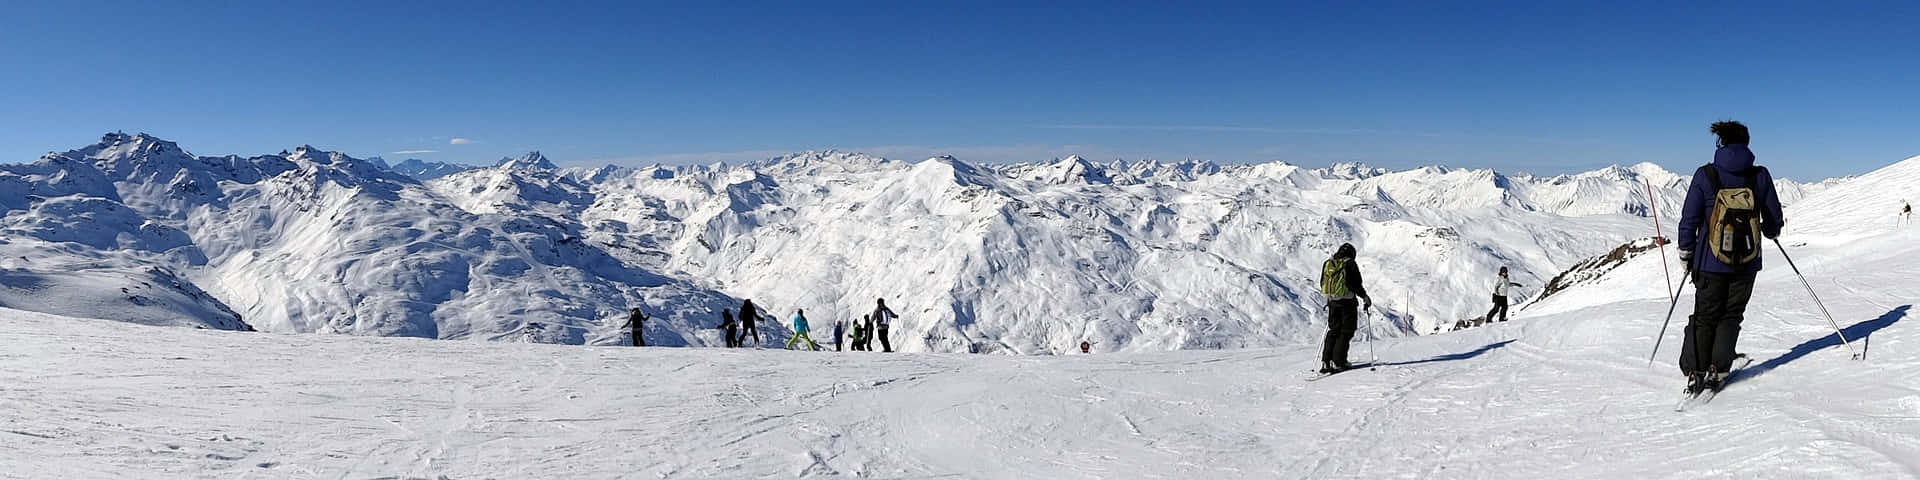 Menschenbeim Skifahren - Schnee-panoramabild